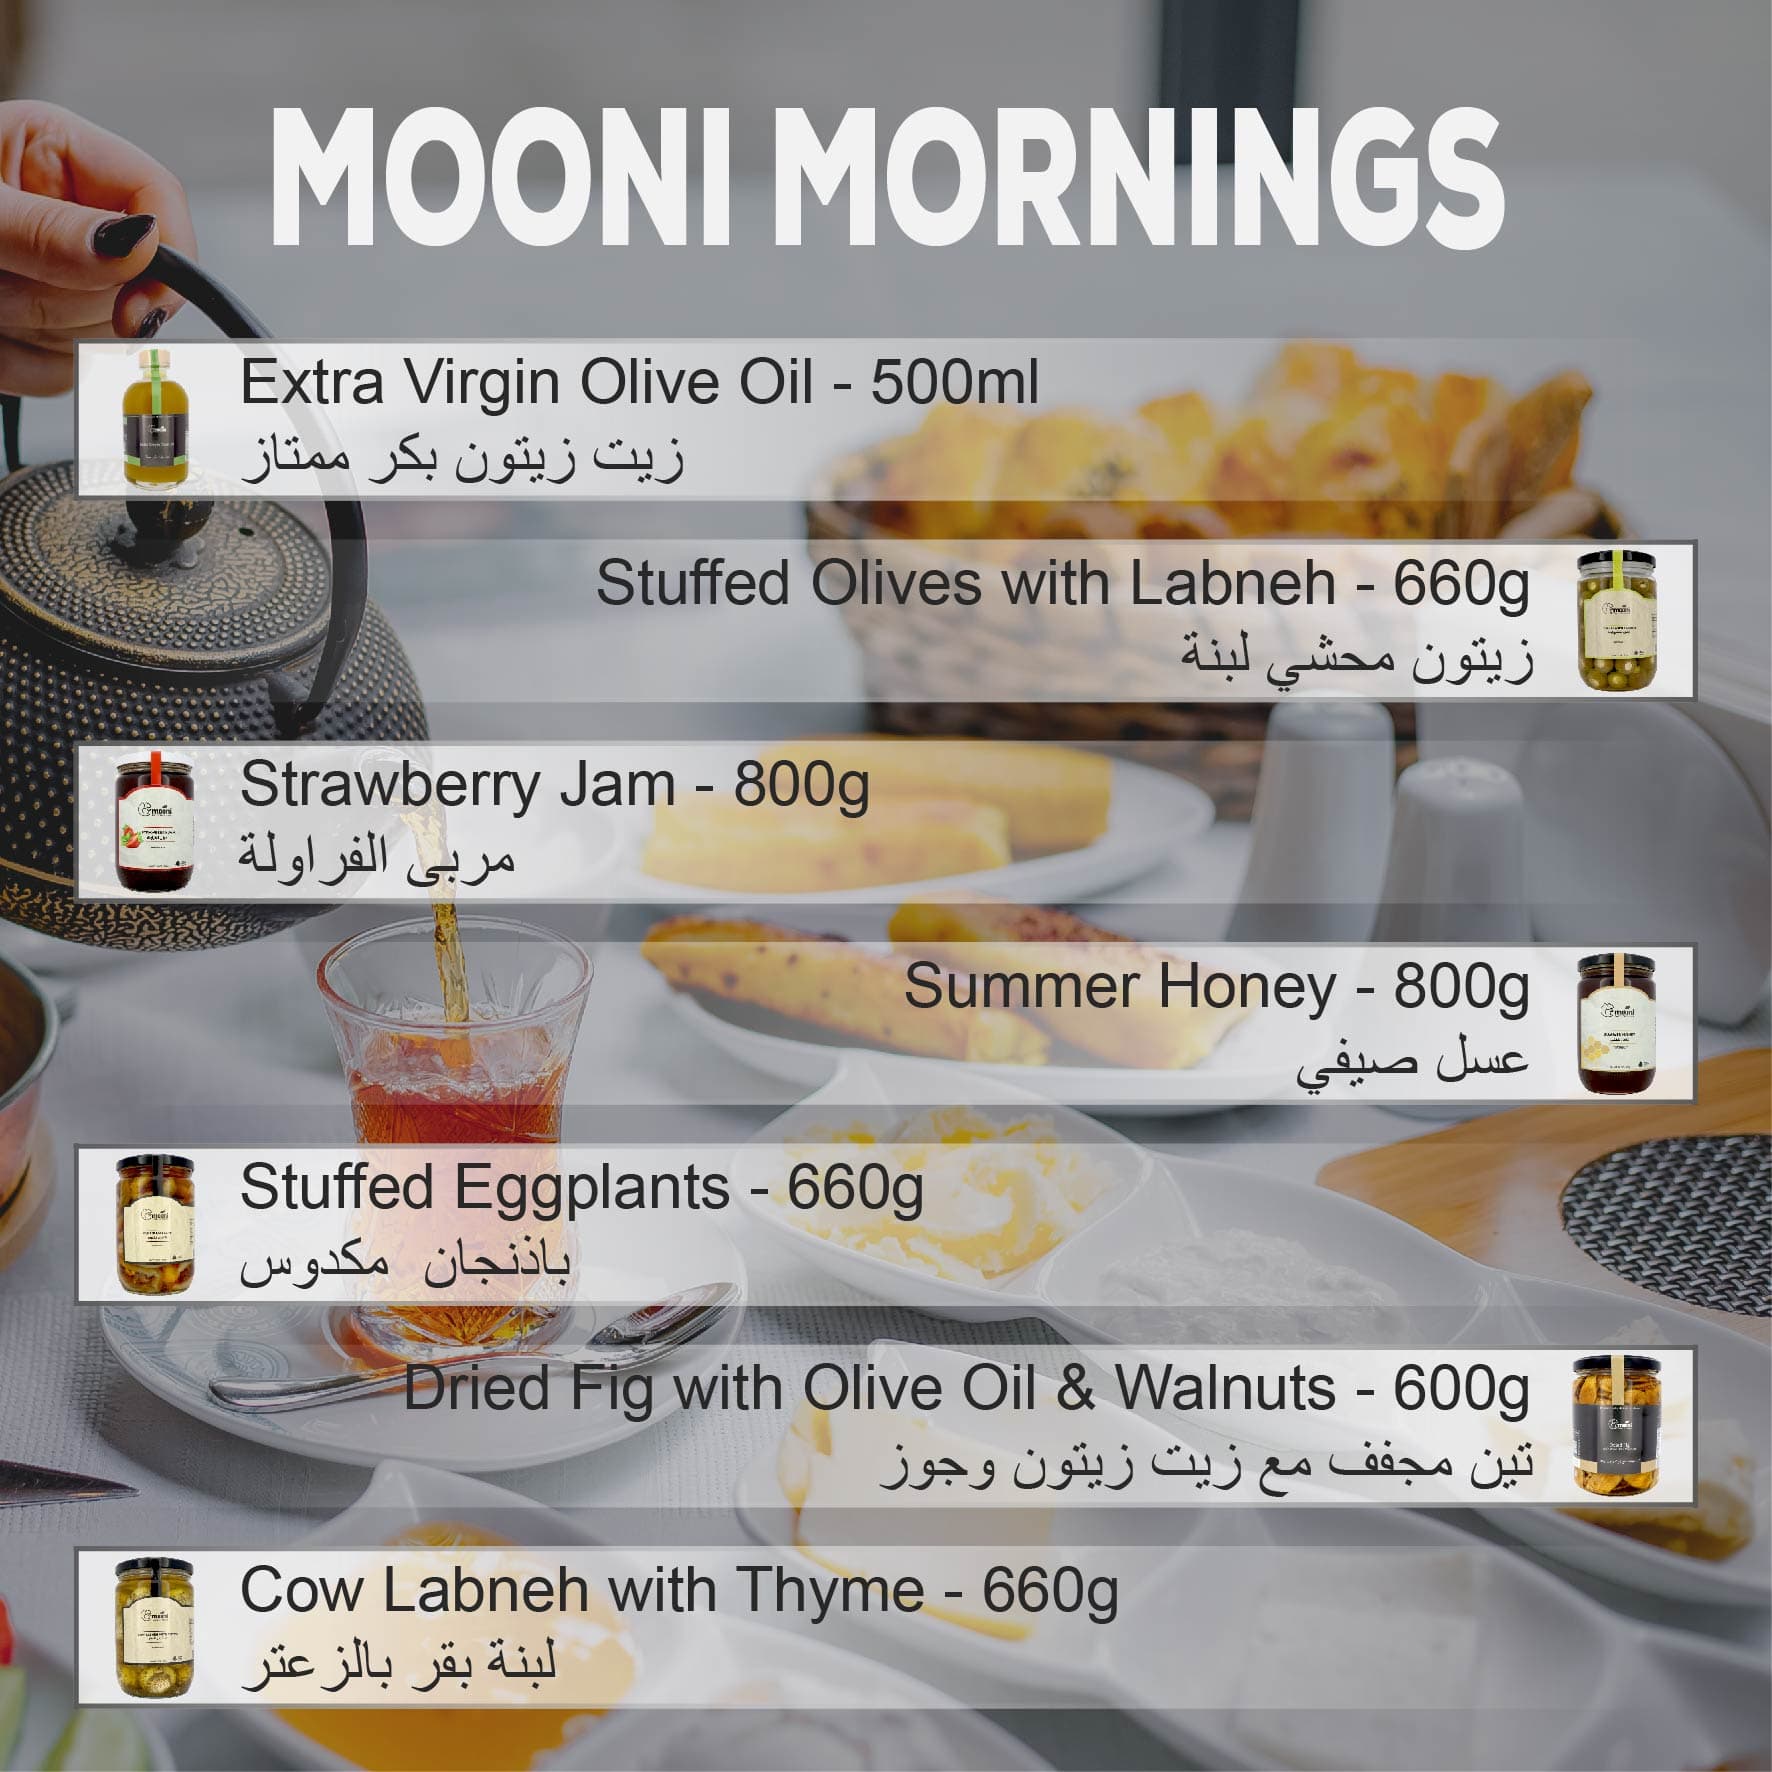 MOONI MORNINGS List